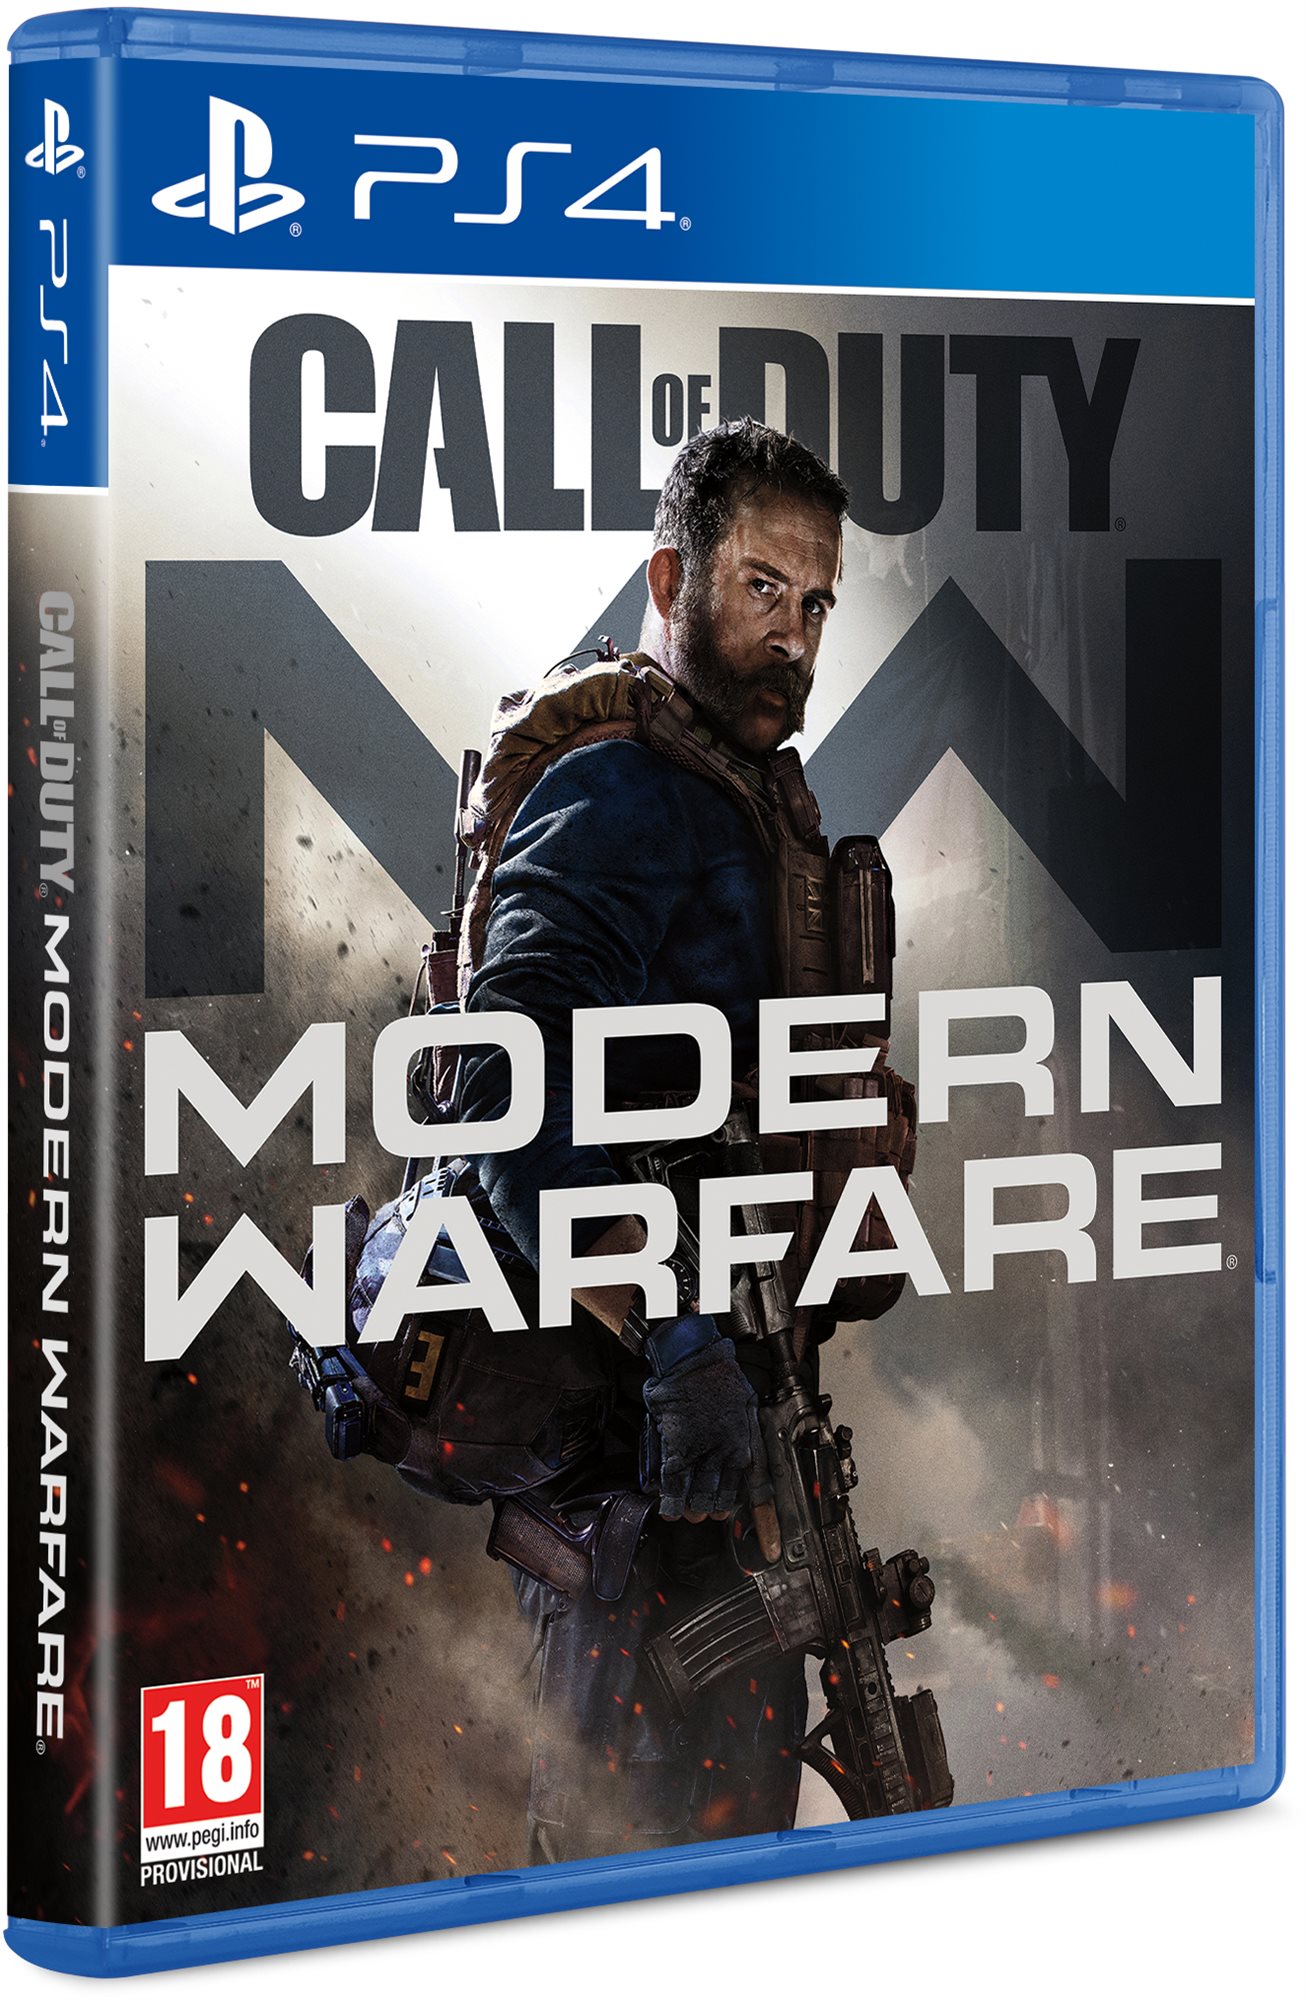 Call of Duty: Modern Warfare (2019) - PS4